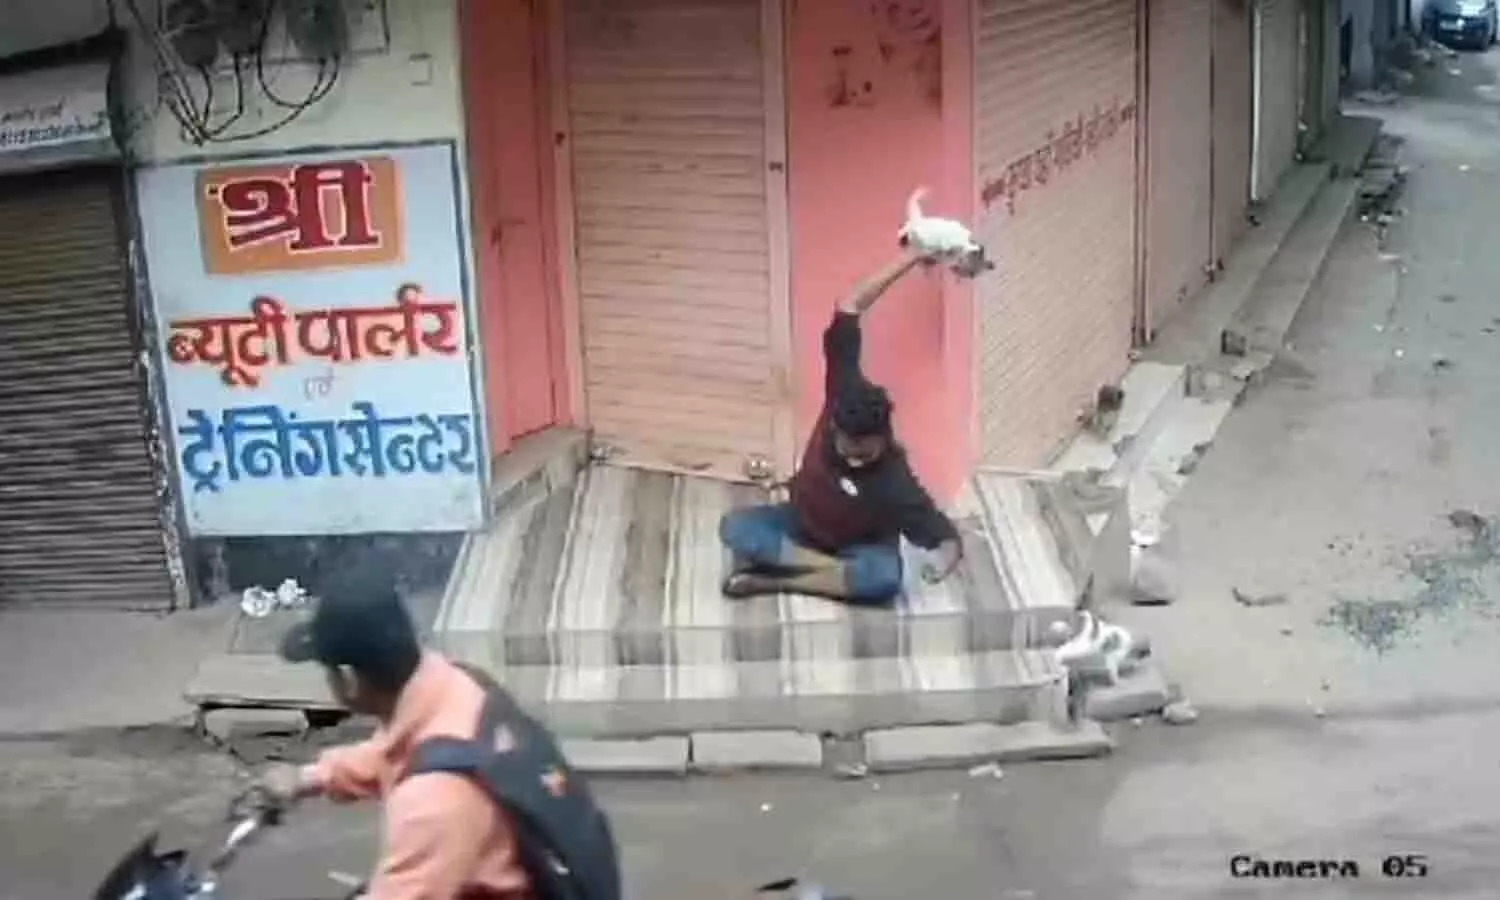 युवक ने कुत्ते के बच्चे को बेहरमी से पटका, पैर से कुचला, ज्योतिरादित्य सिंधिया की मांग के बाद गिरफ्तार हुआ युवक, वीडियो वायरल